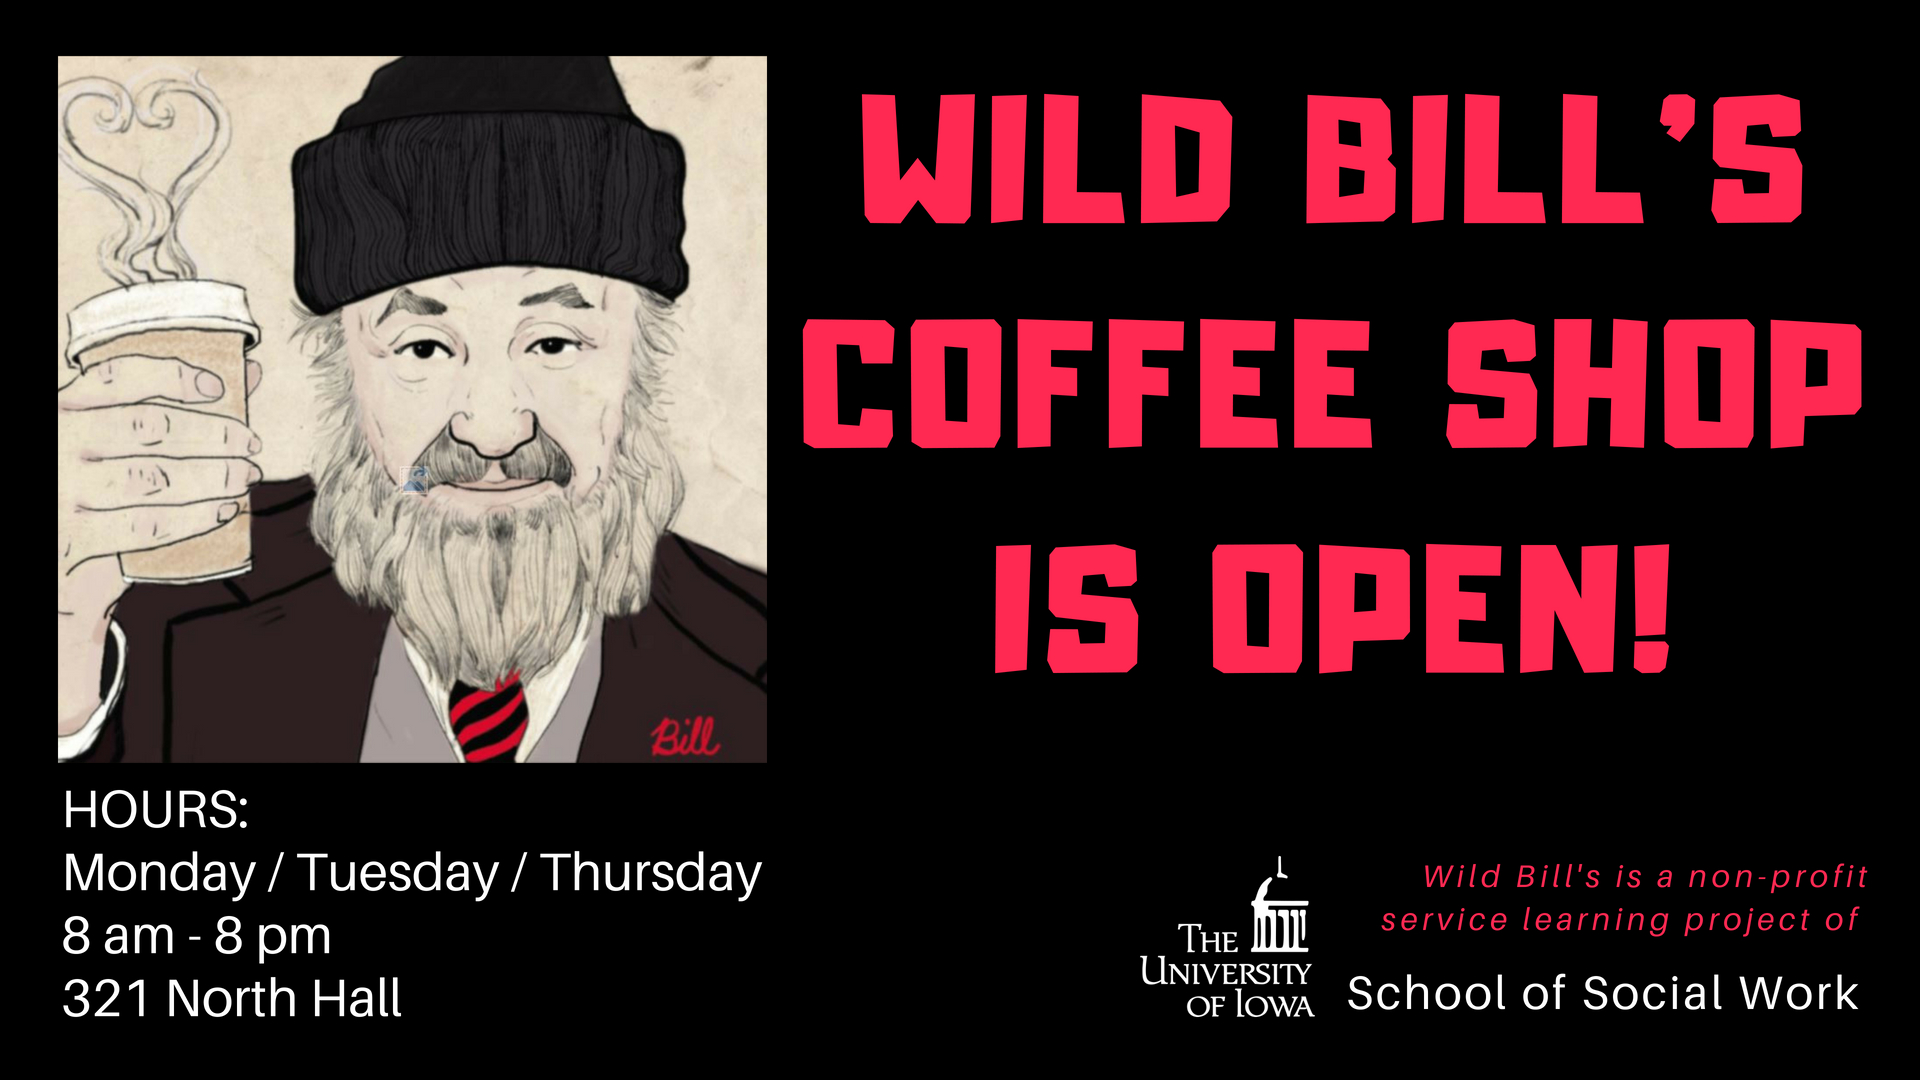 Wild Bill's Coffee Shop is open